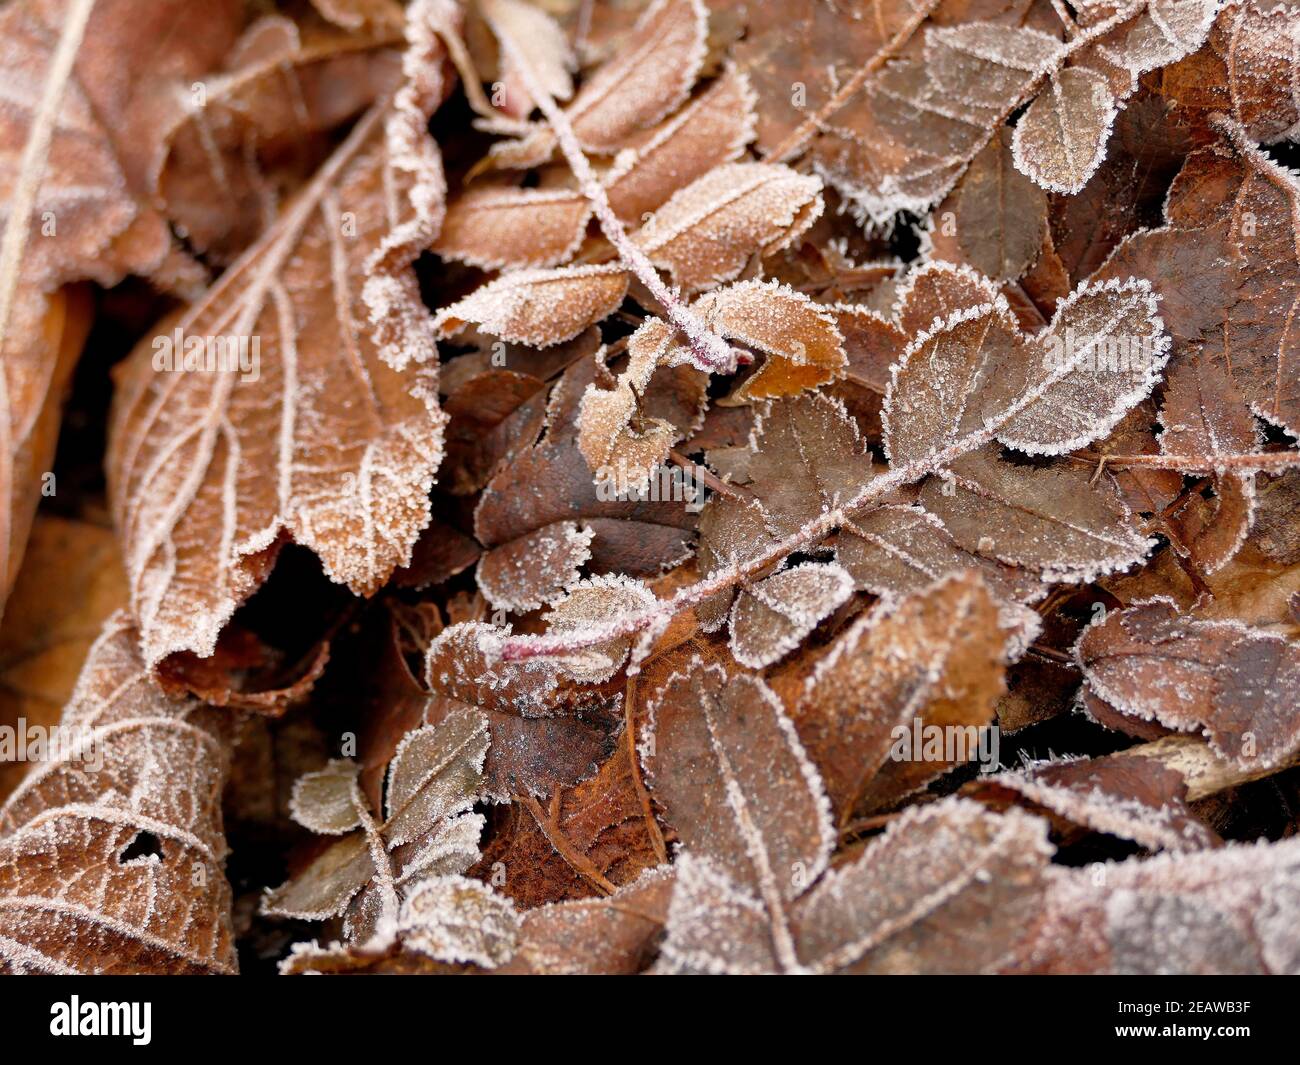 hoarfrost on fallen leaves in winter Stock Photo